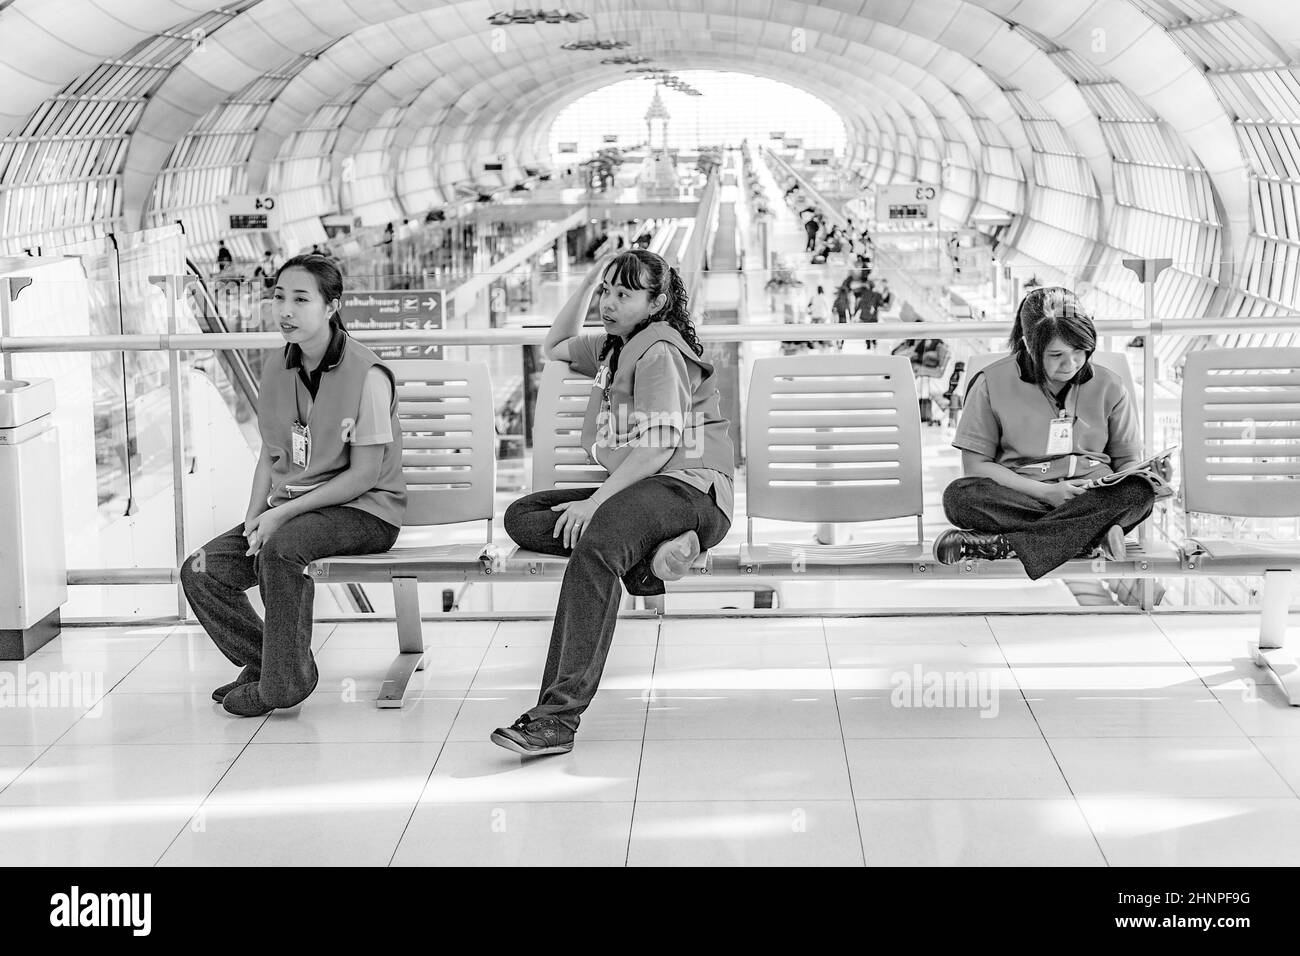 Le donne della società di pulizia al nuovo aeroporto Suvarnabhumi hanno un riposo Foto Stock